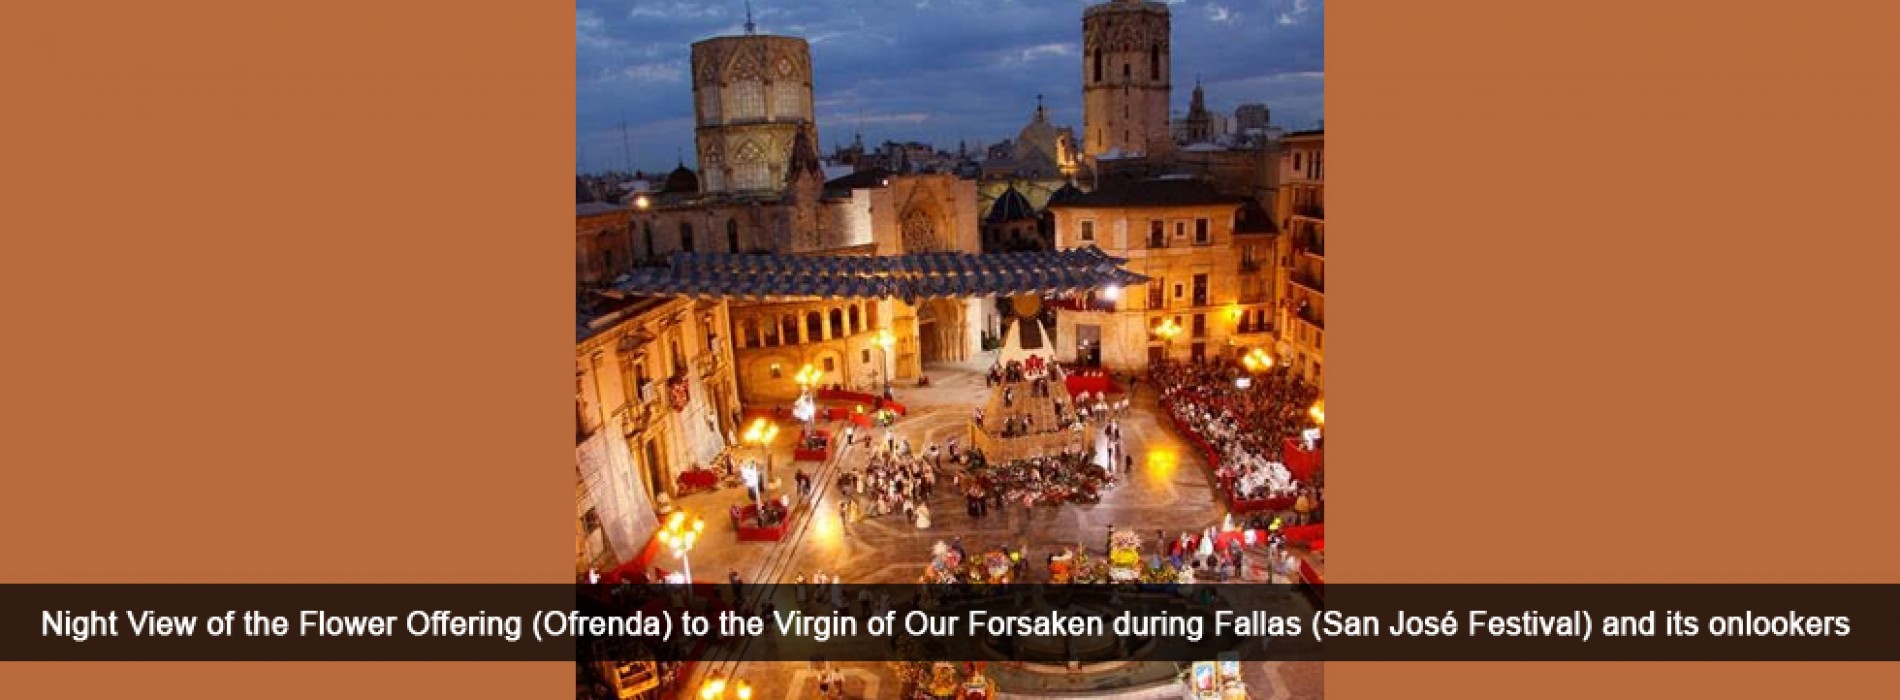 Las Fallas of Valencia declared as Intangible Cultural Heritage by UNESCO